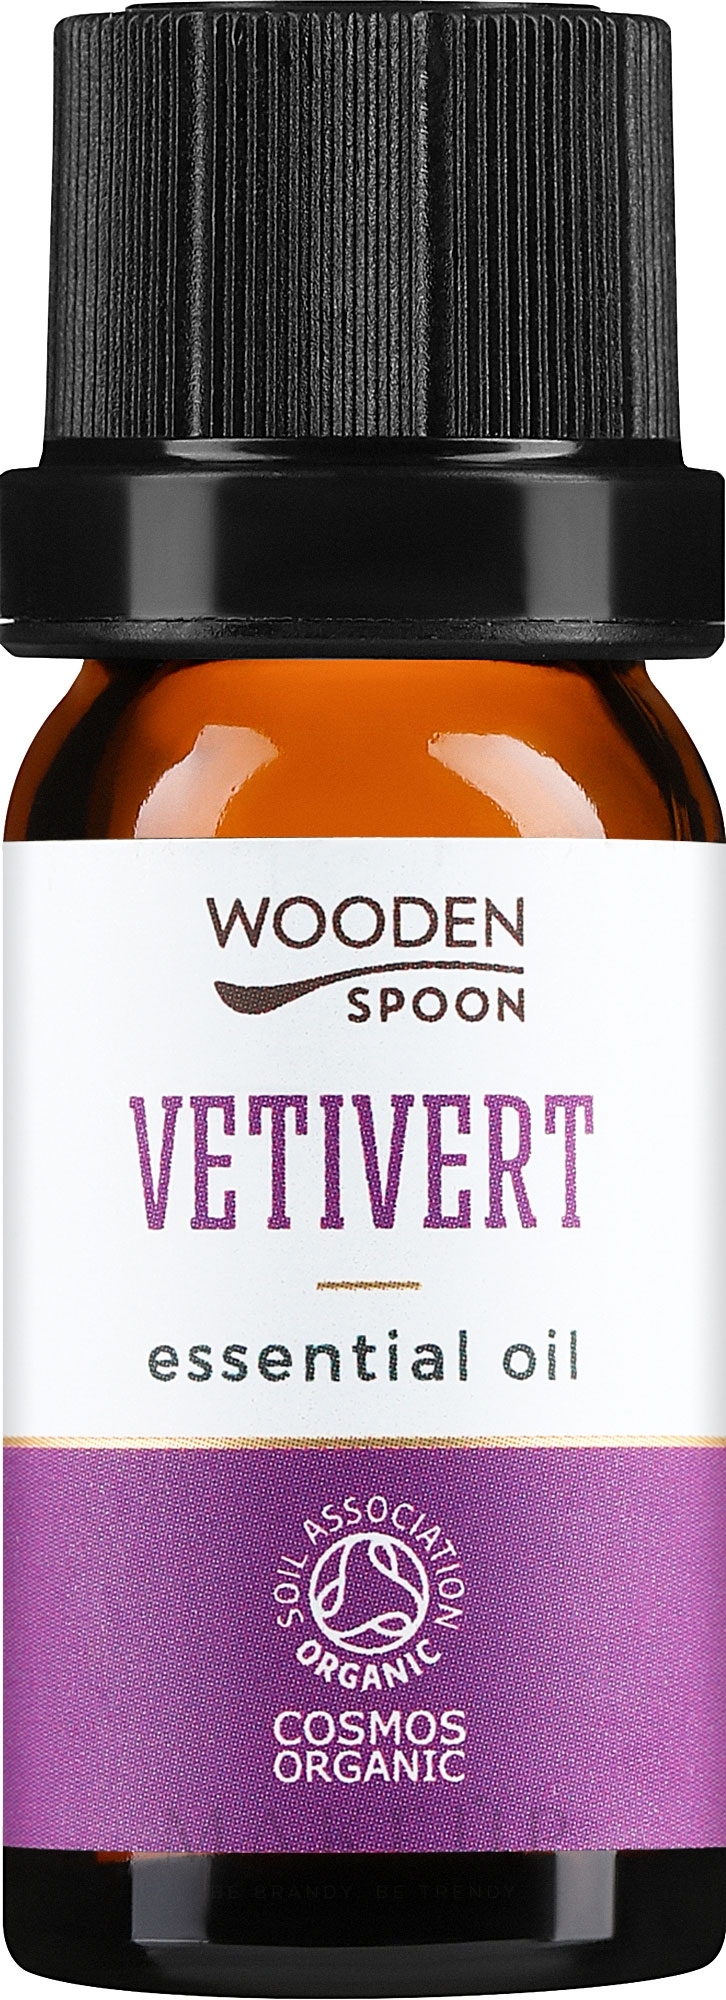 Ätherisches Öl Vetiver - Wooden Spoon Vetivert Essential Oil — Bild 5 ml